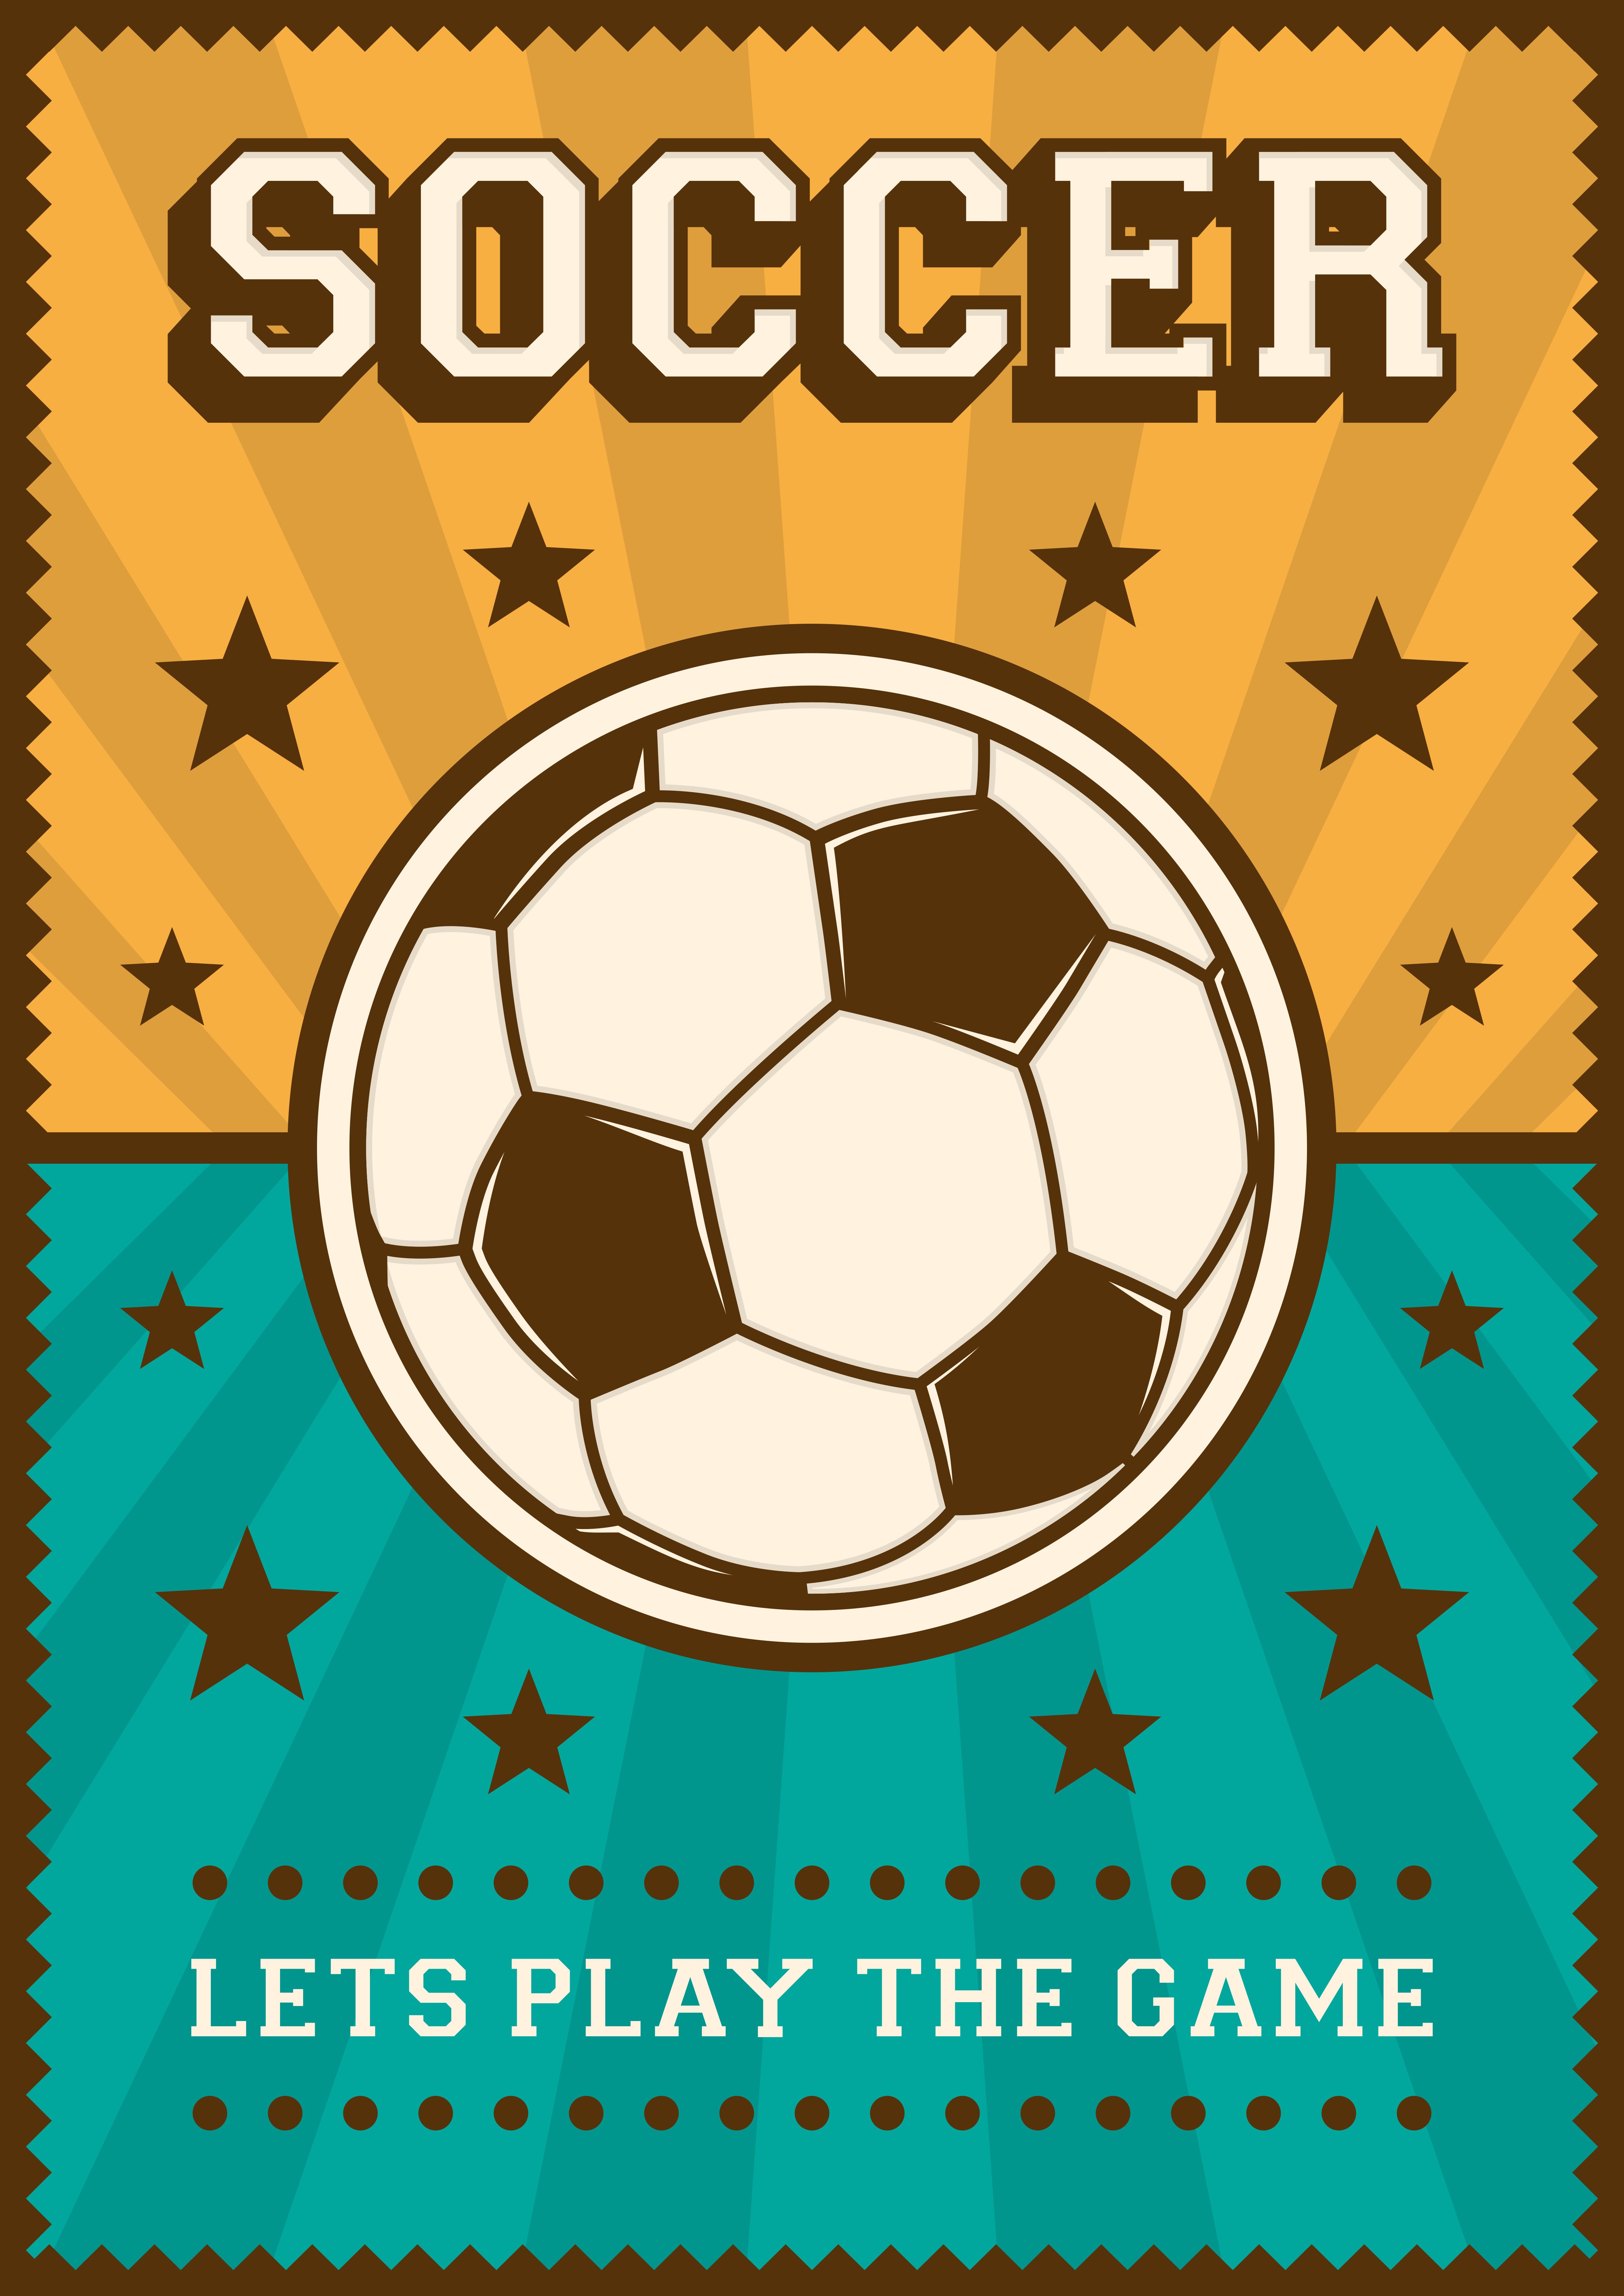 Soccer Football Sport Retro Pop Art Poster Signage 640676 Vector Art at